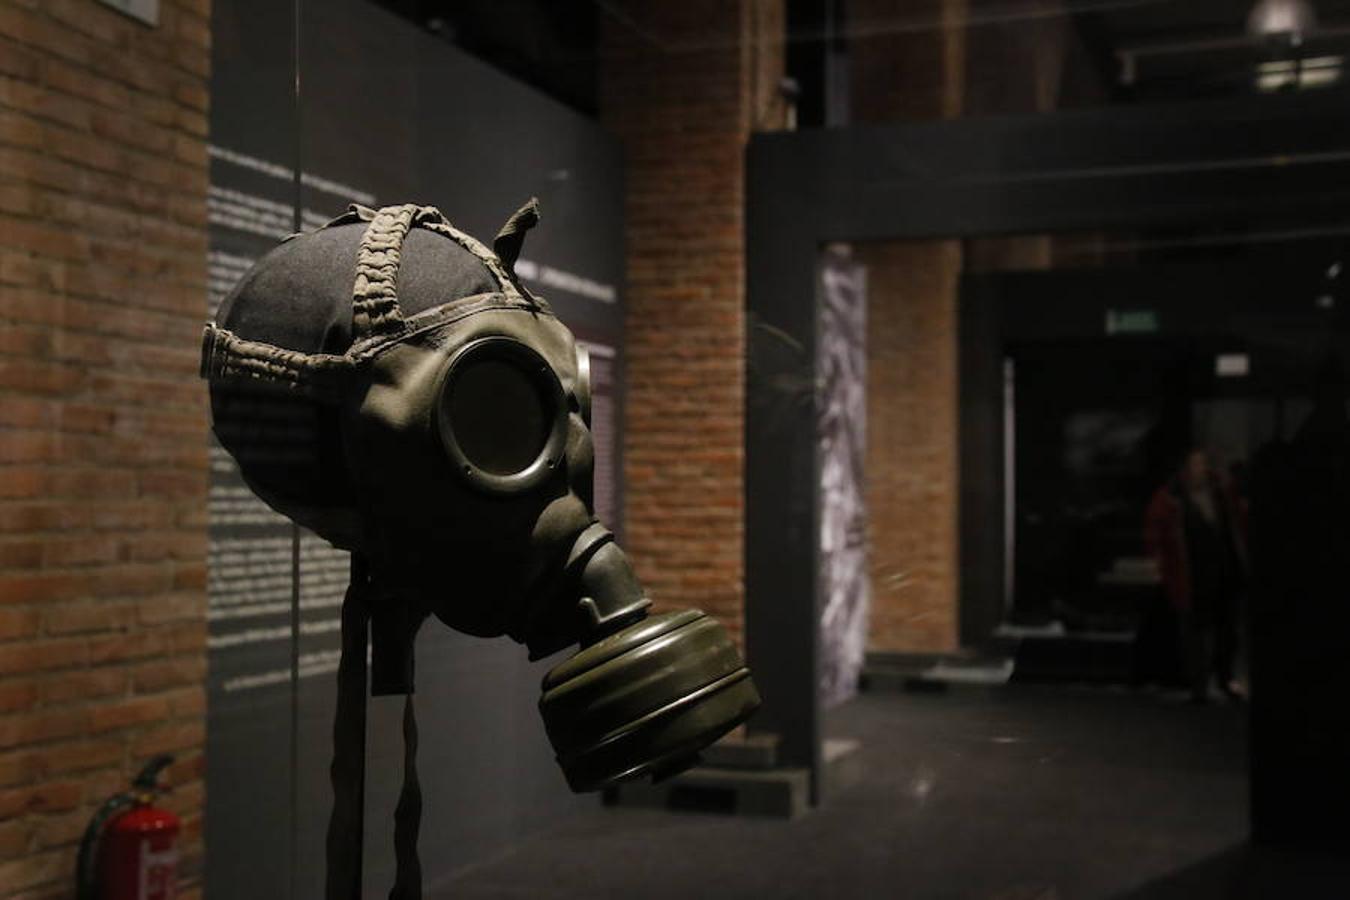 La exposición definitiva sobre el terrible campo de exterminio de Auschwitz, organizada por una empresa vasca, reúne 600 objetos y testimonios de víctimas y verdugos